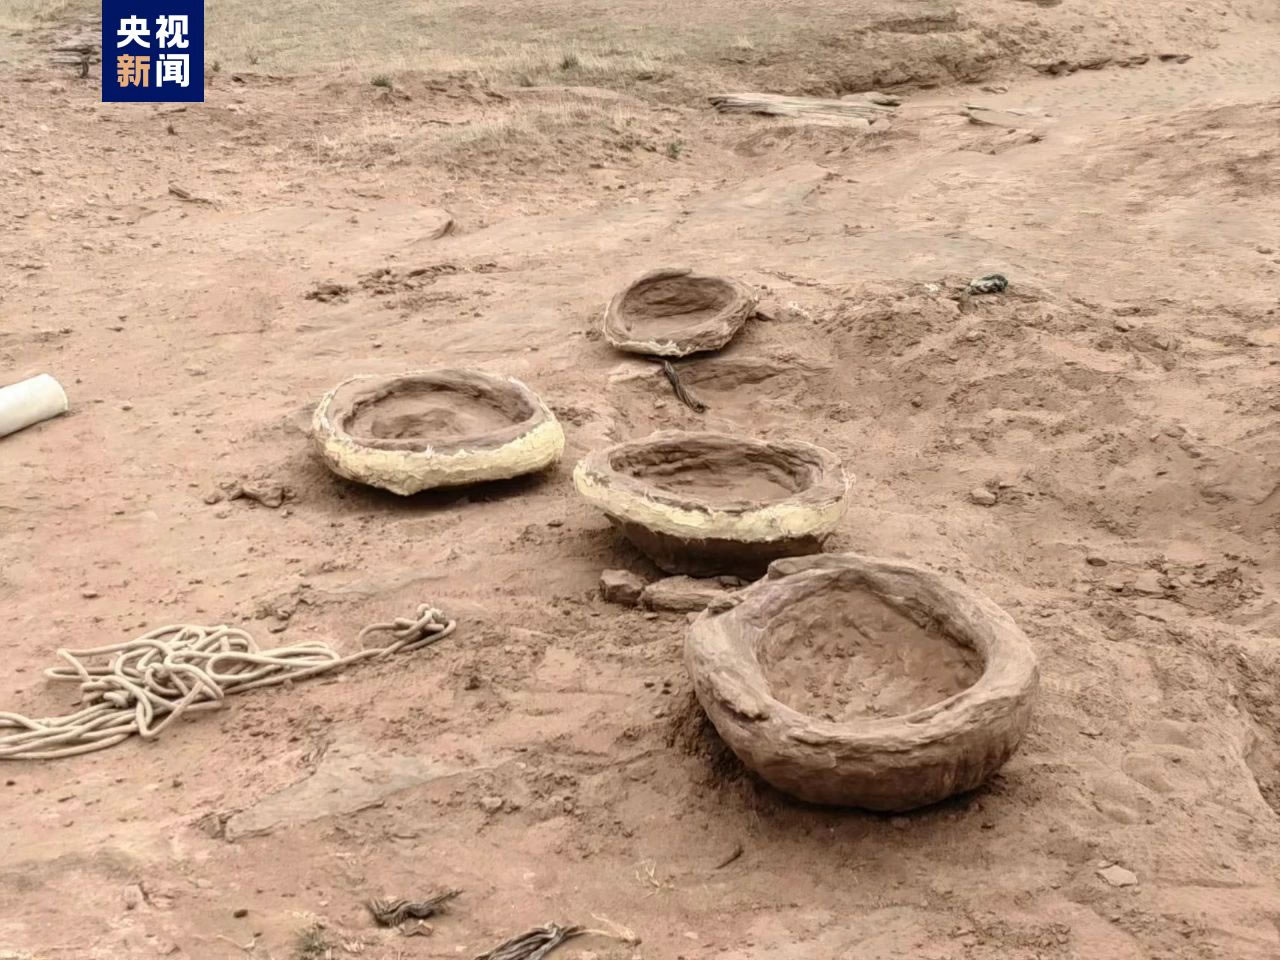 内蒙古鄂托克旗恐龙遗迹化石国家级自然保护区新发现一处恐龙足迹化石点